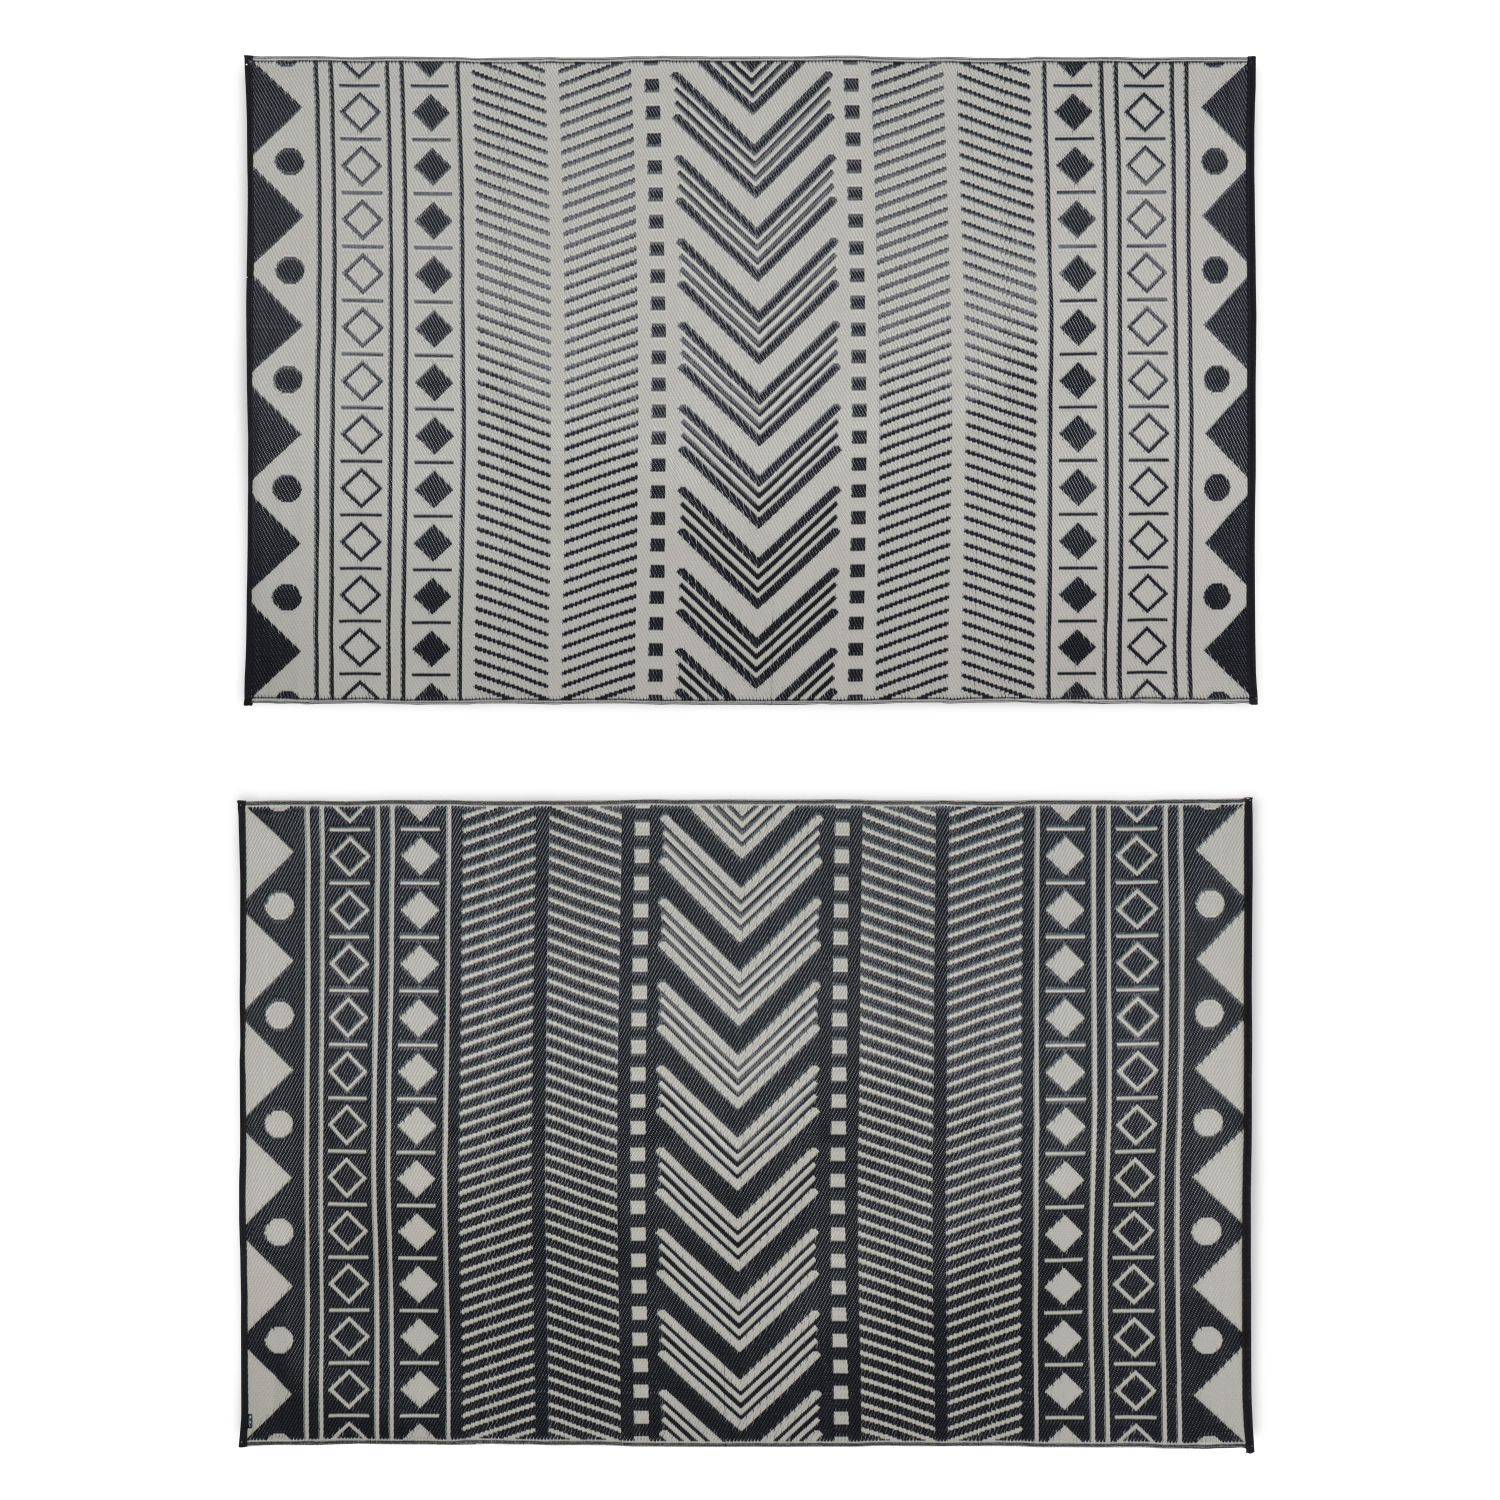 Tapis d’extérieur 180x270cm BAMAKO - Rectangulaire, motif ethnique noir / beige, jacquard, réversible, indoor / outdoor Photo2